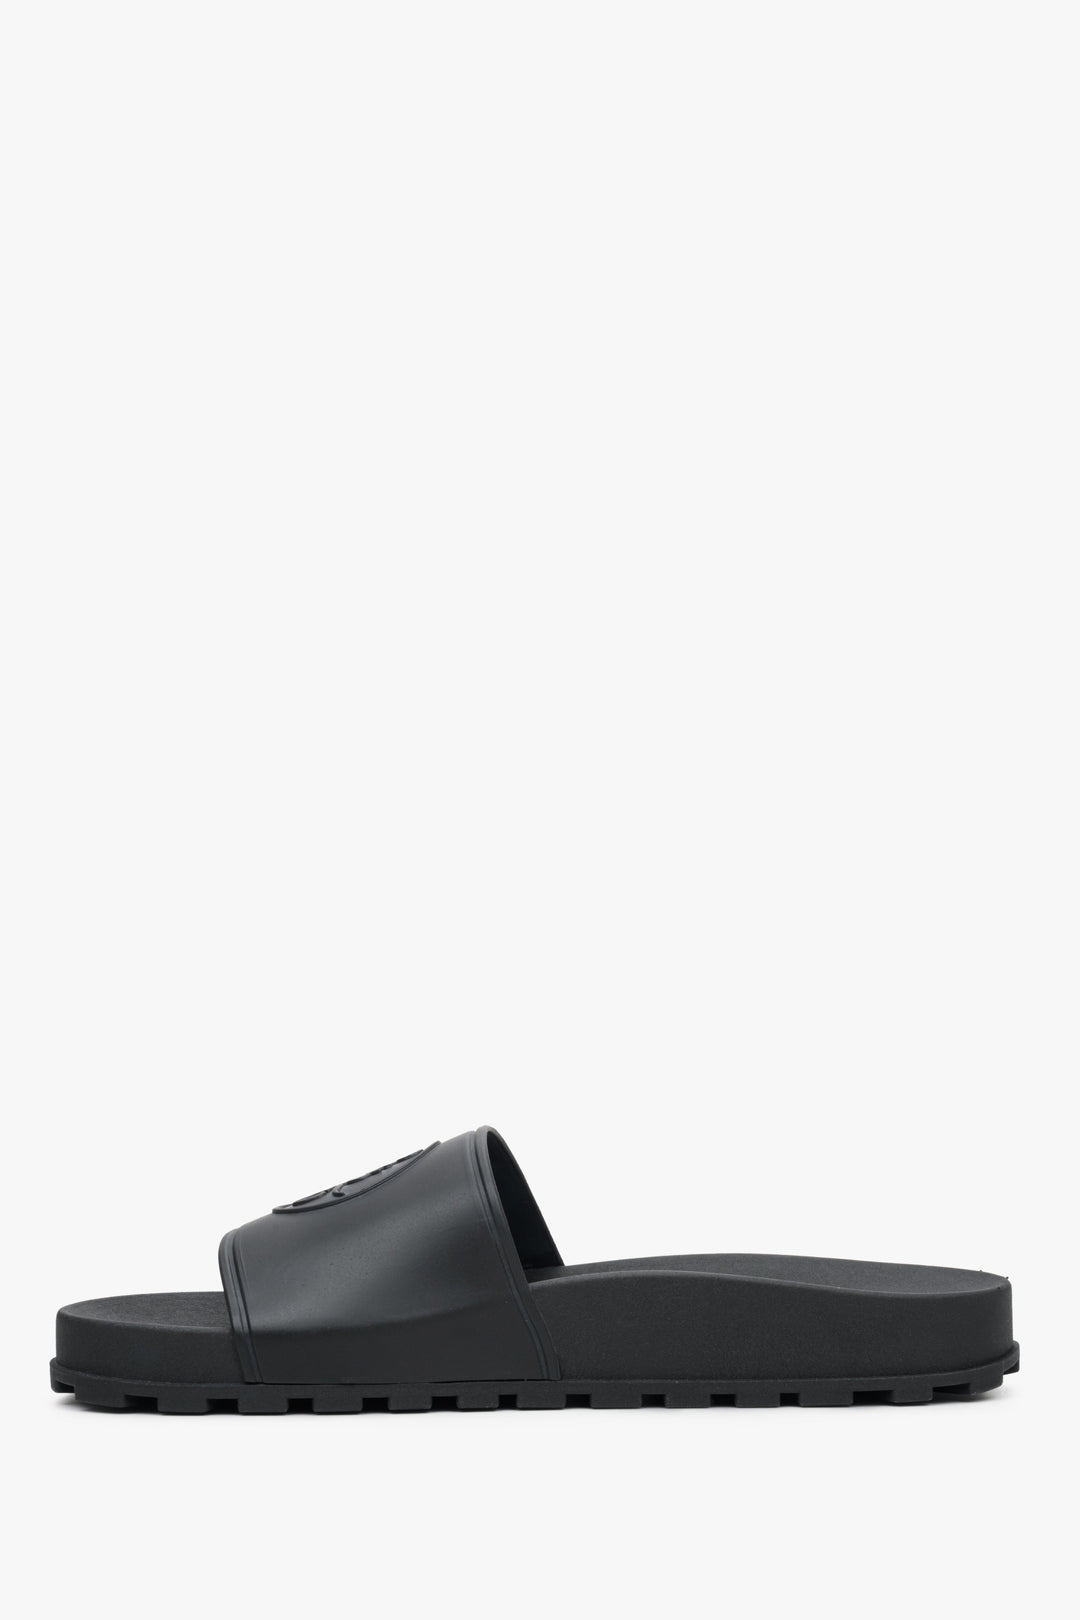 Czarne klapki damskie z gumy Estro - profil buta.